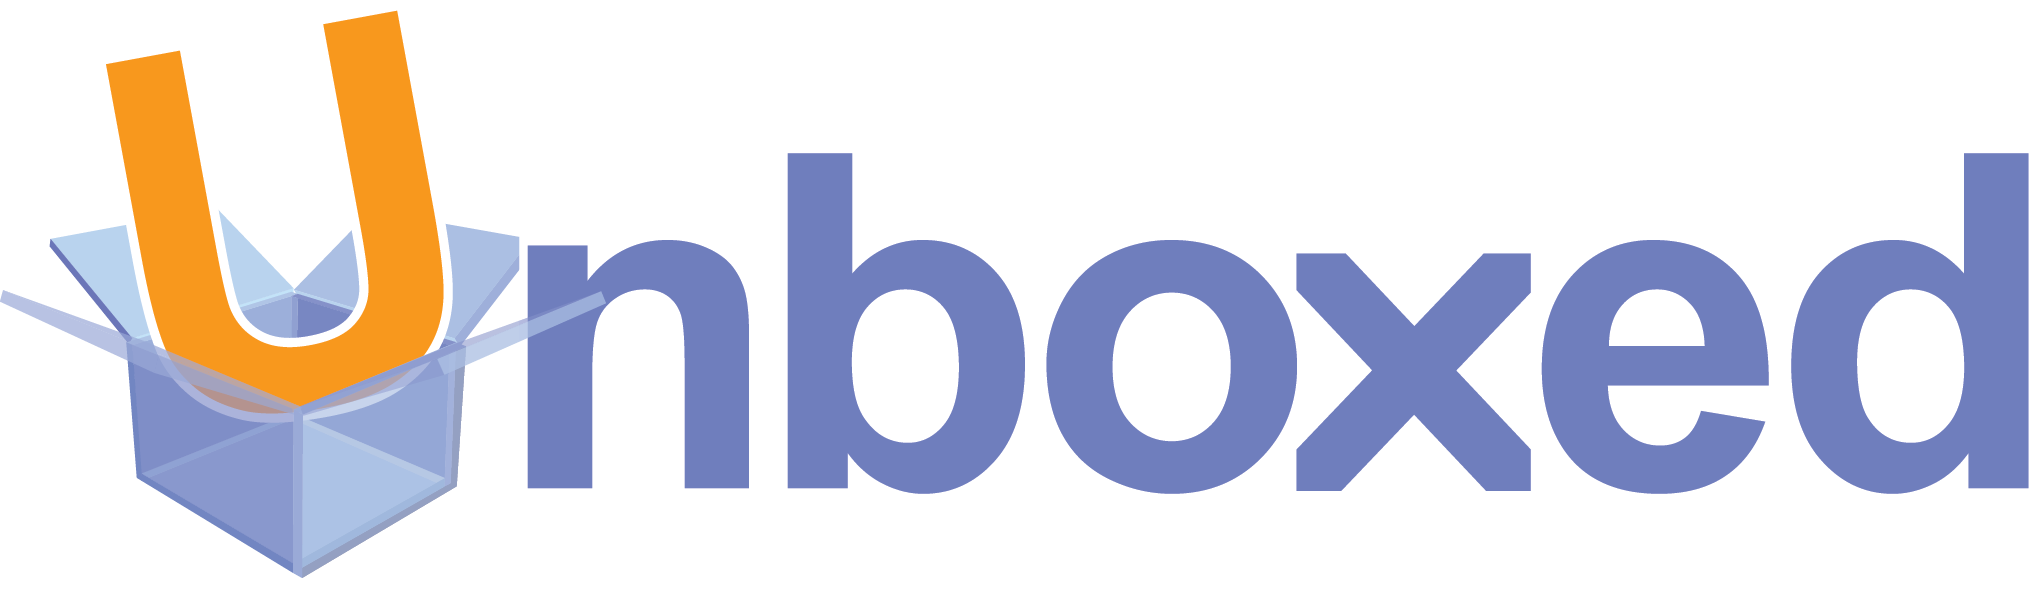 7826_Unboxed Logo_LARGE